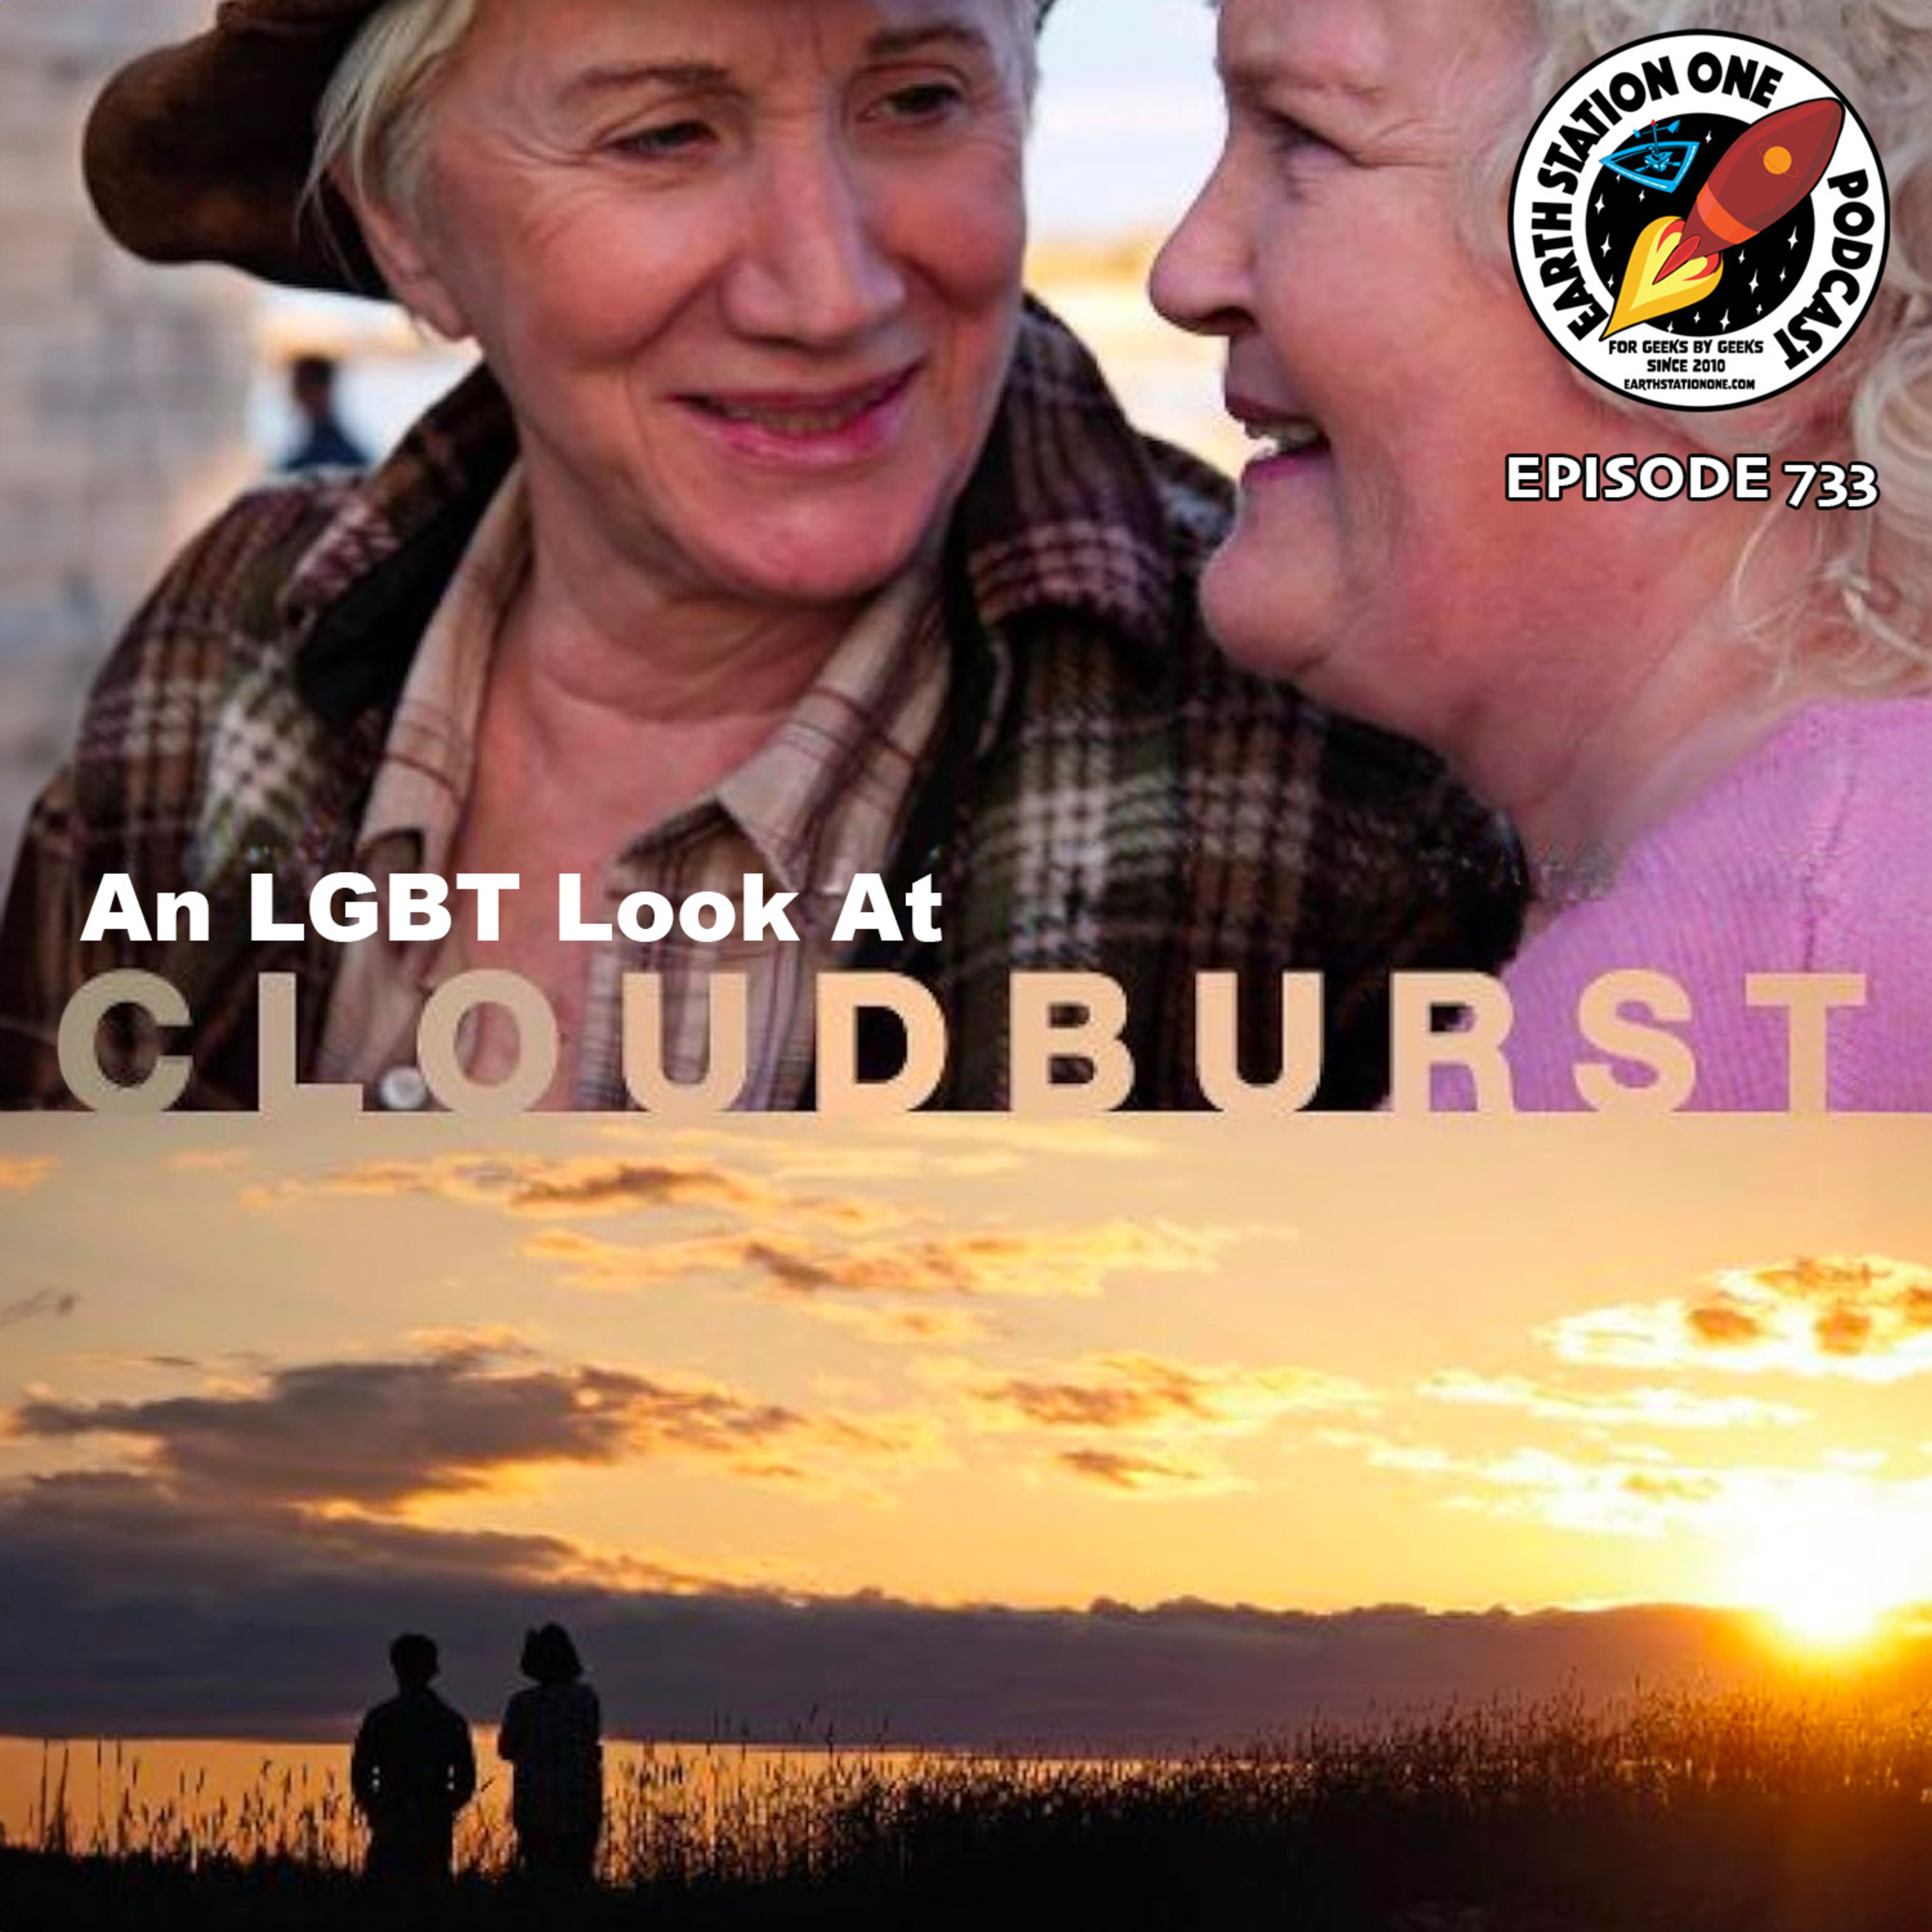 An LGBT Look At Cloudburst